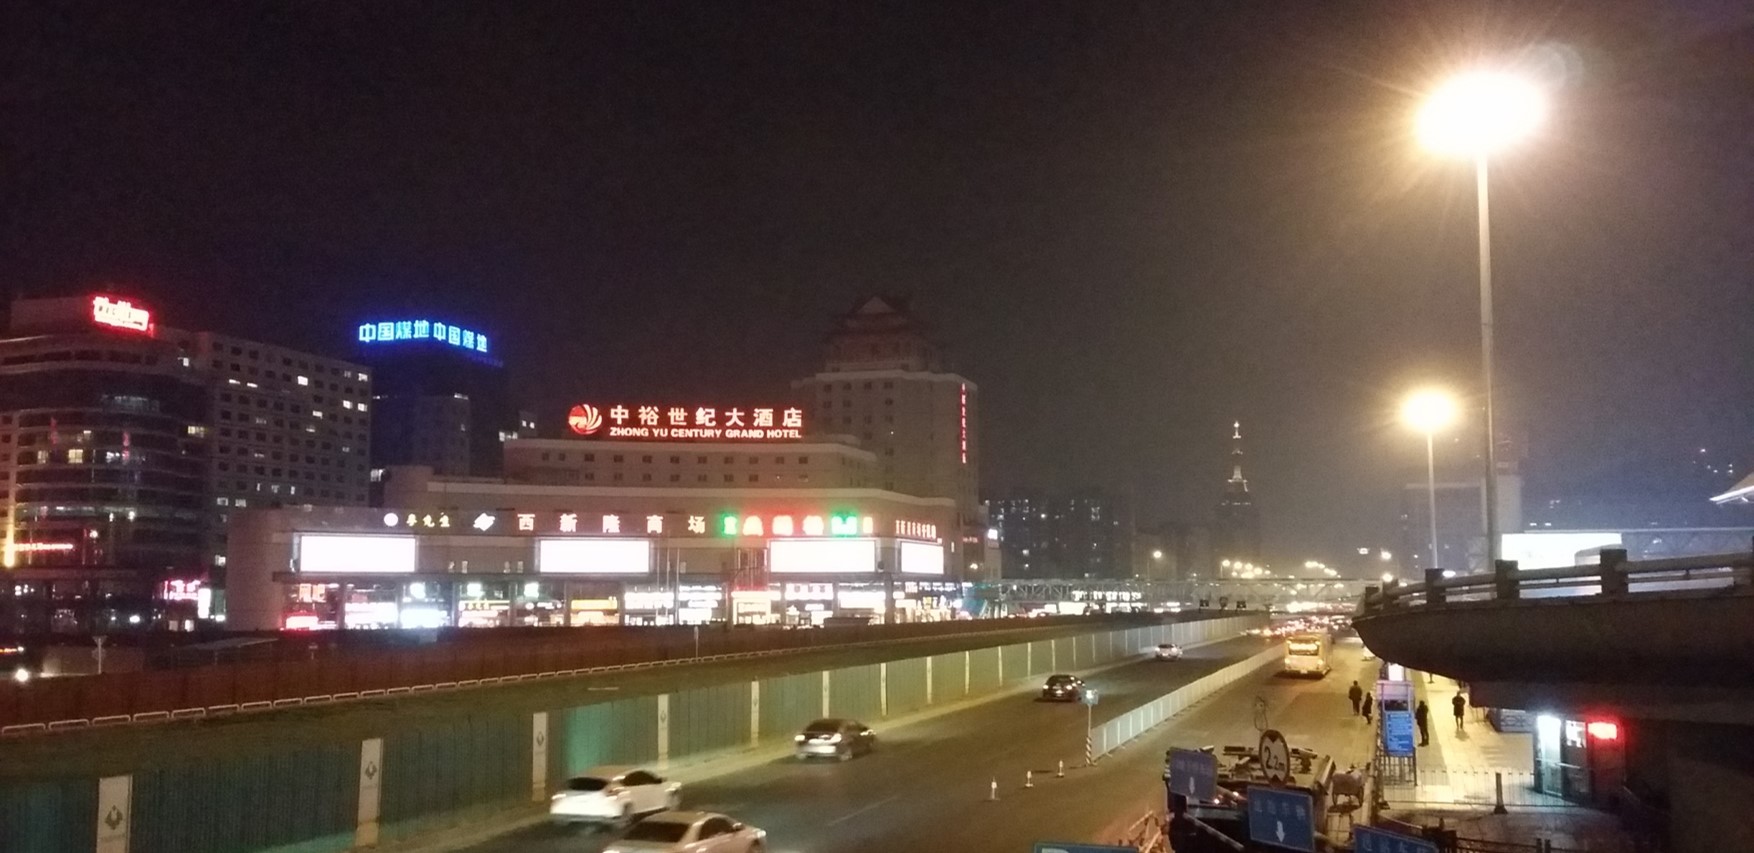 北京全北京西站北广场中裕世纪大酒店南面街边设施灯箱广告